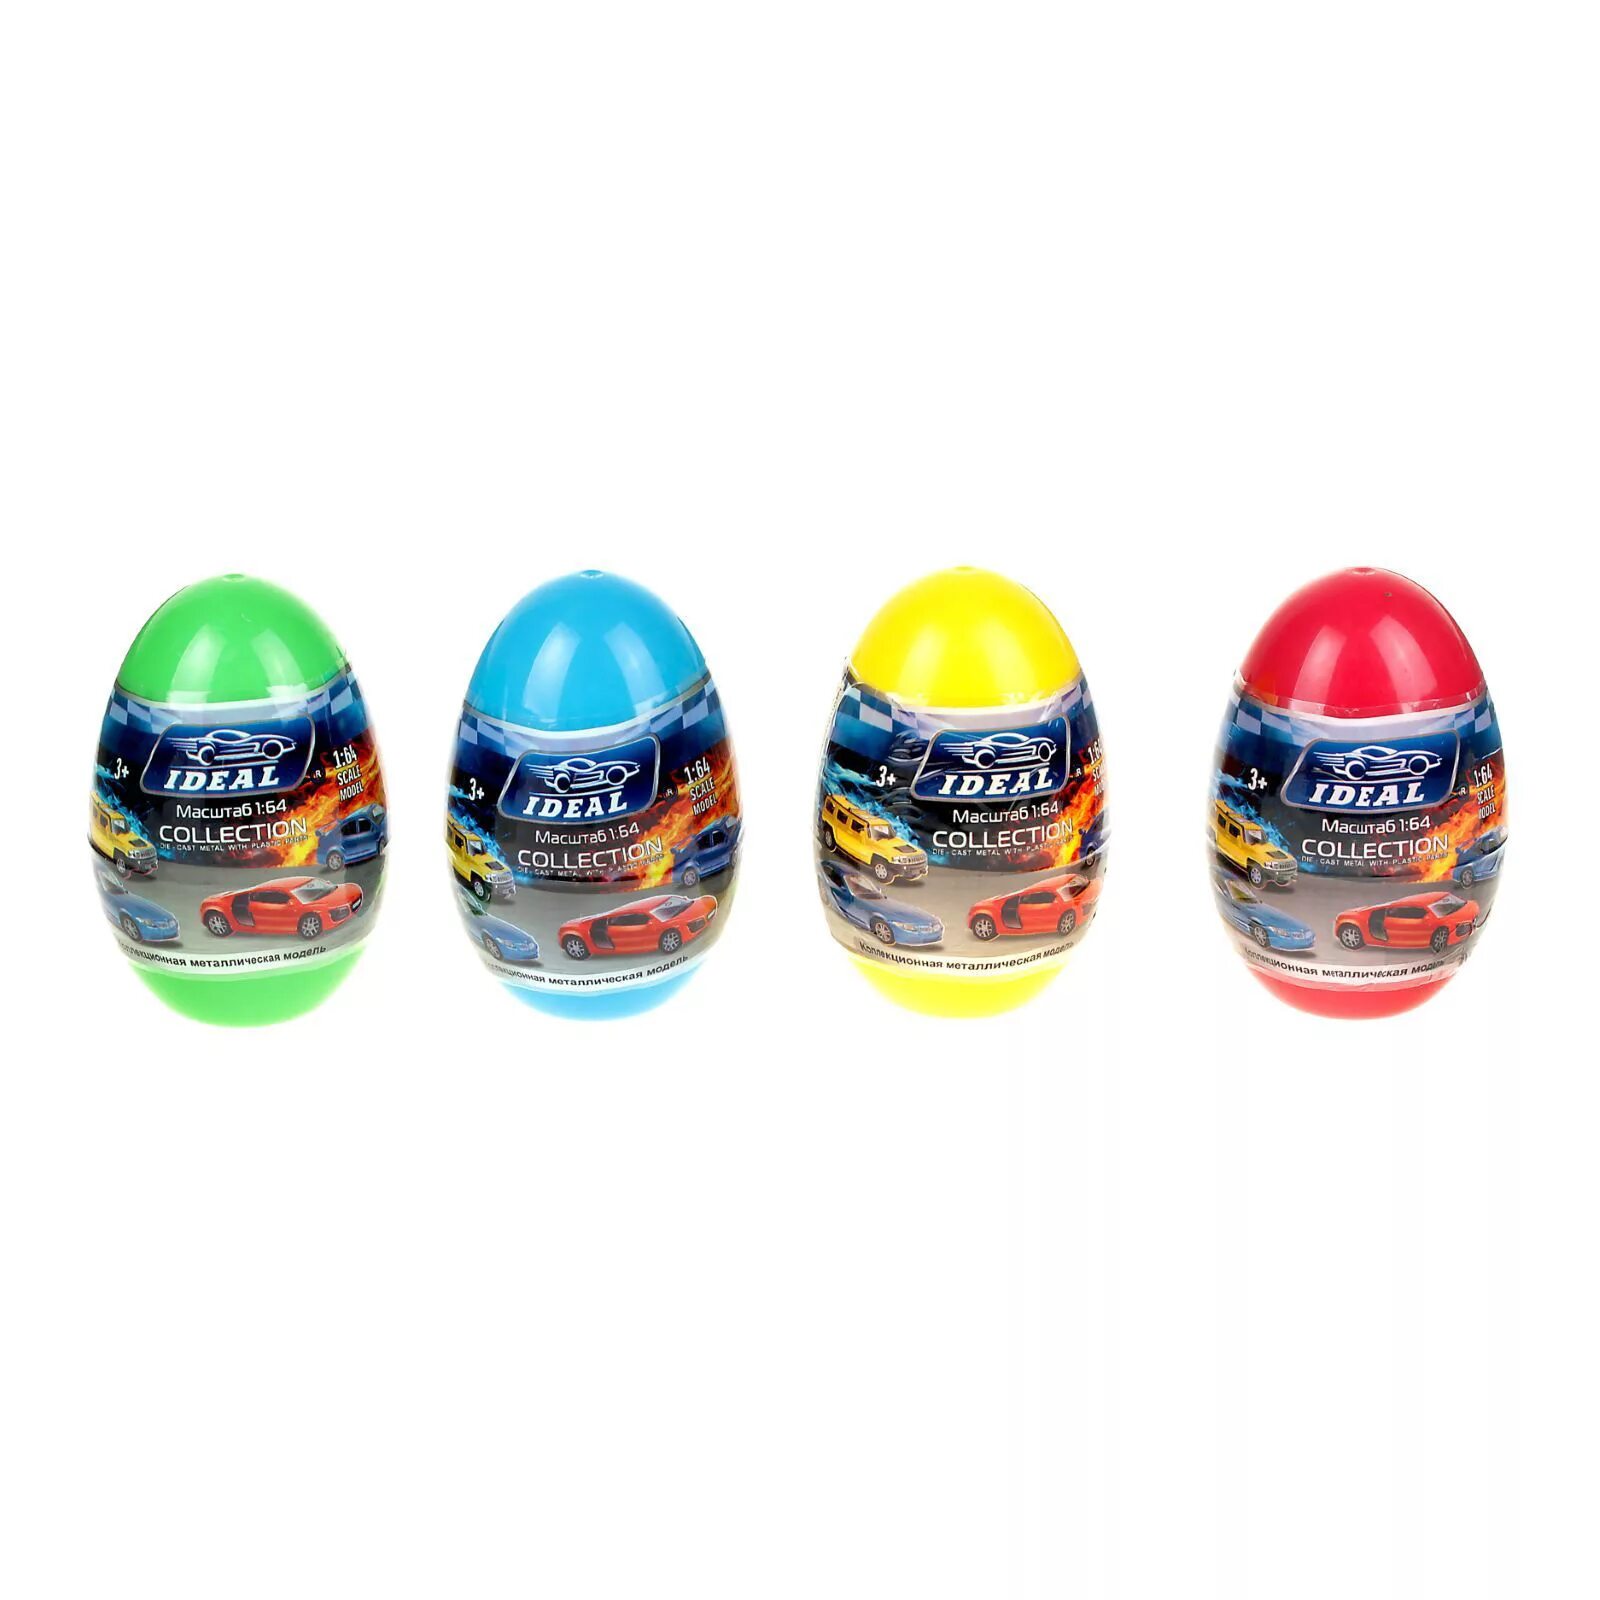 Реклама машинки для яиц. Велли 1 60 яйца. Машинки Велли яйца. Welly машинки в яйце. Яйцо с сюрпризами машина Велли.